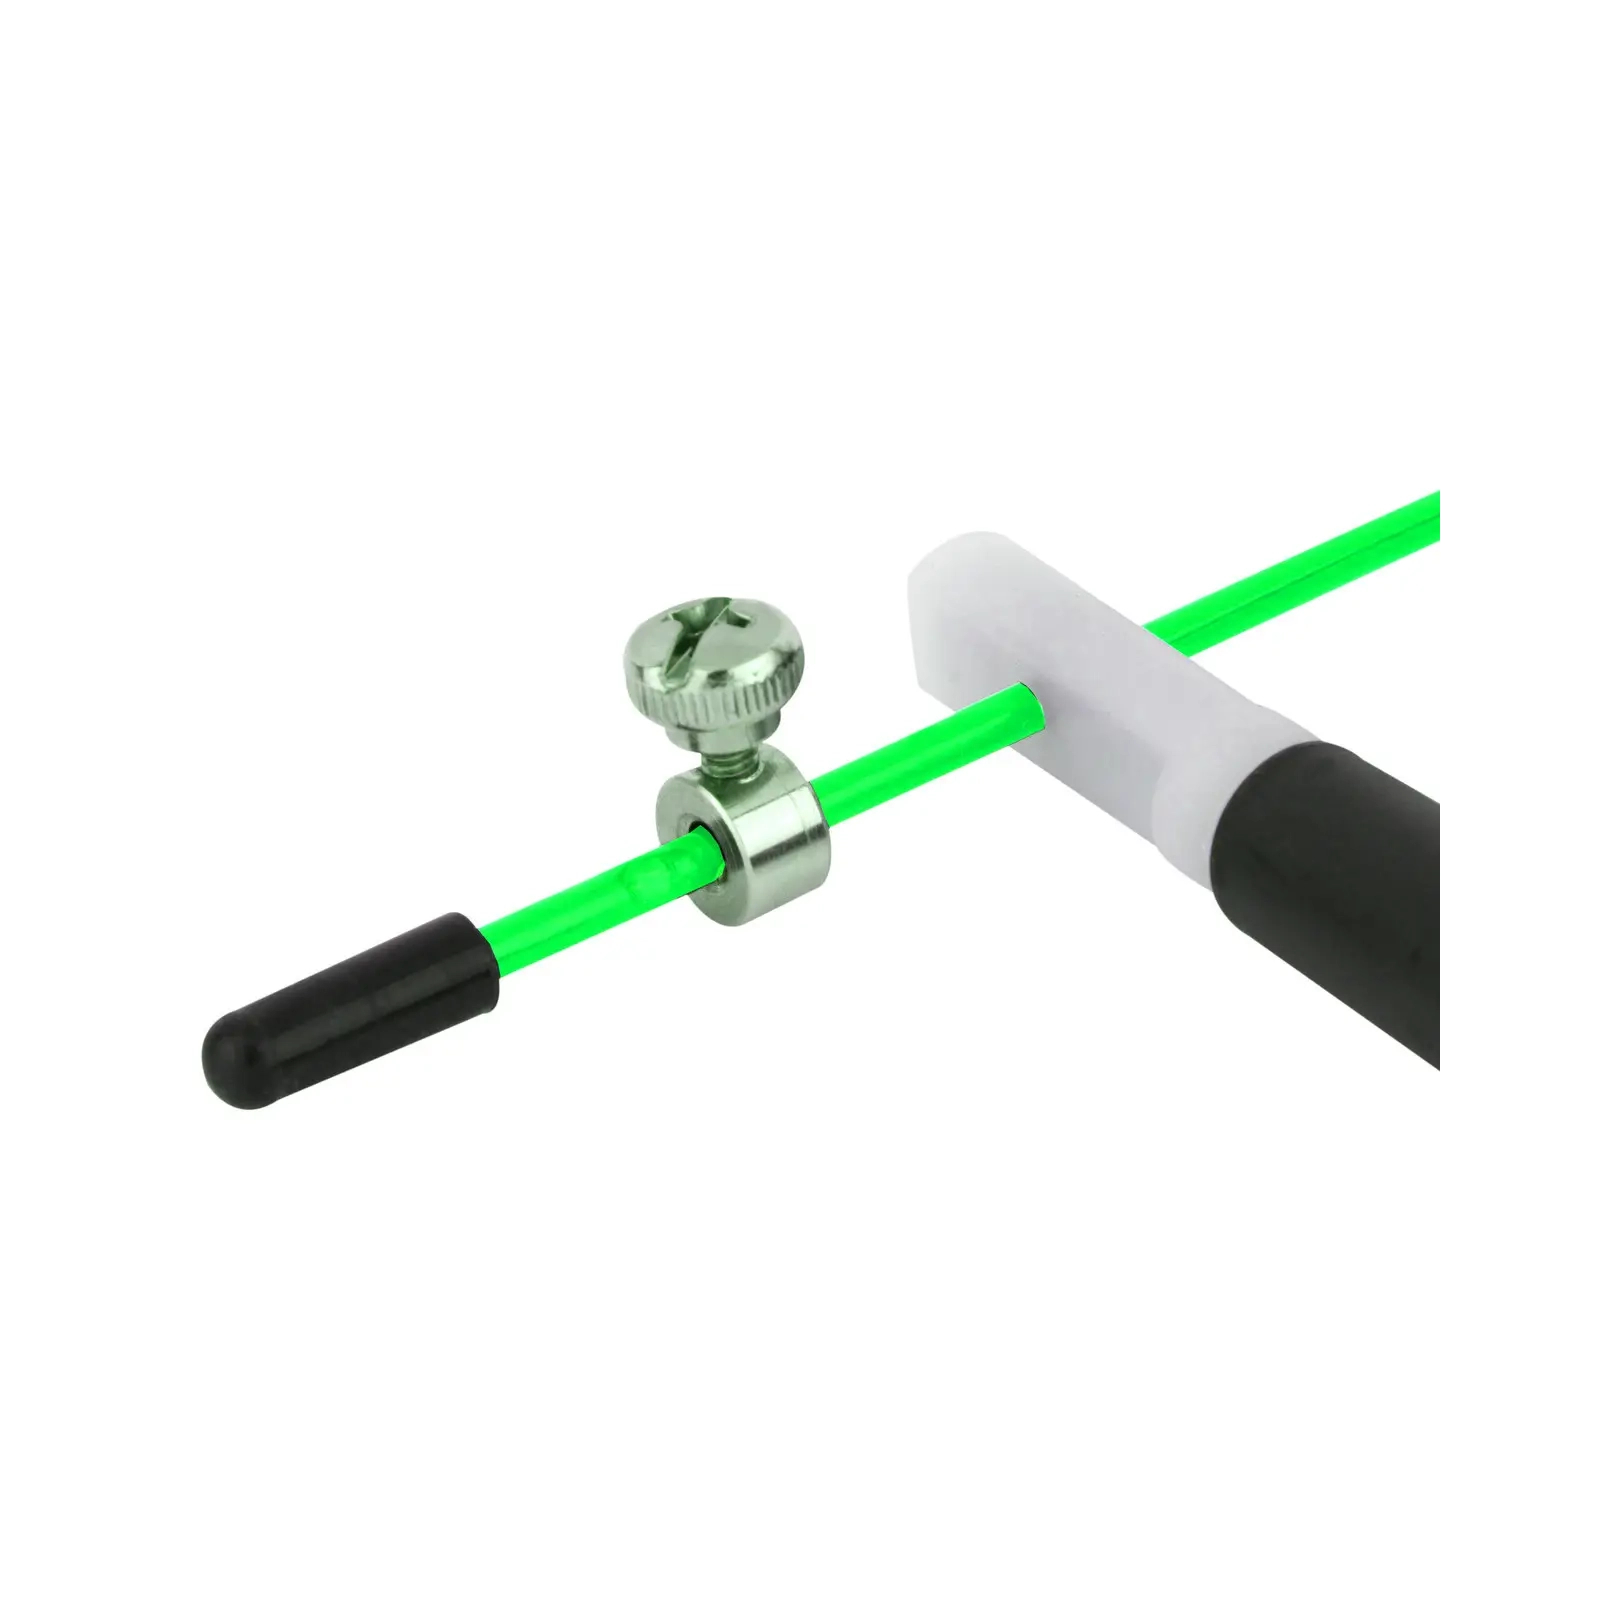 Скакалка PowerPlay 4202 швидкісна Зелена (PP_4202_Green) зображення 5